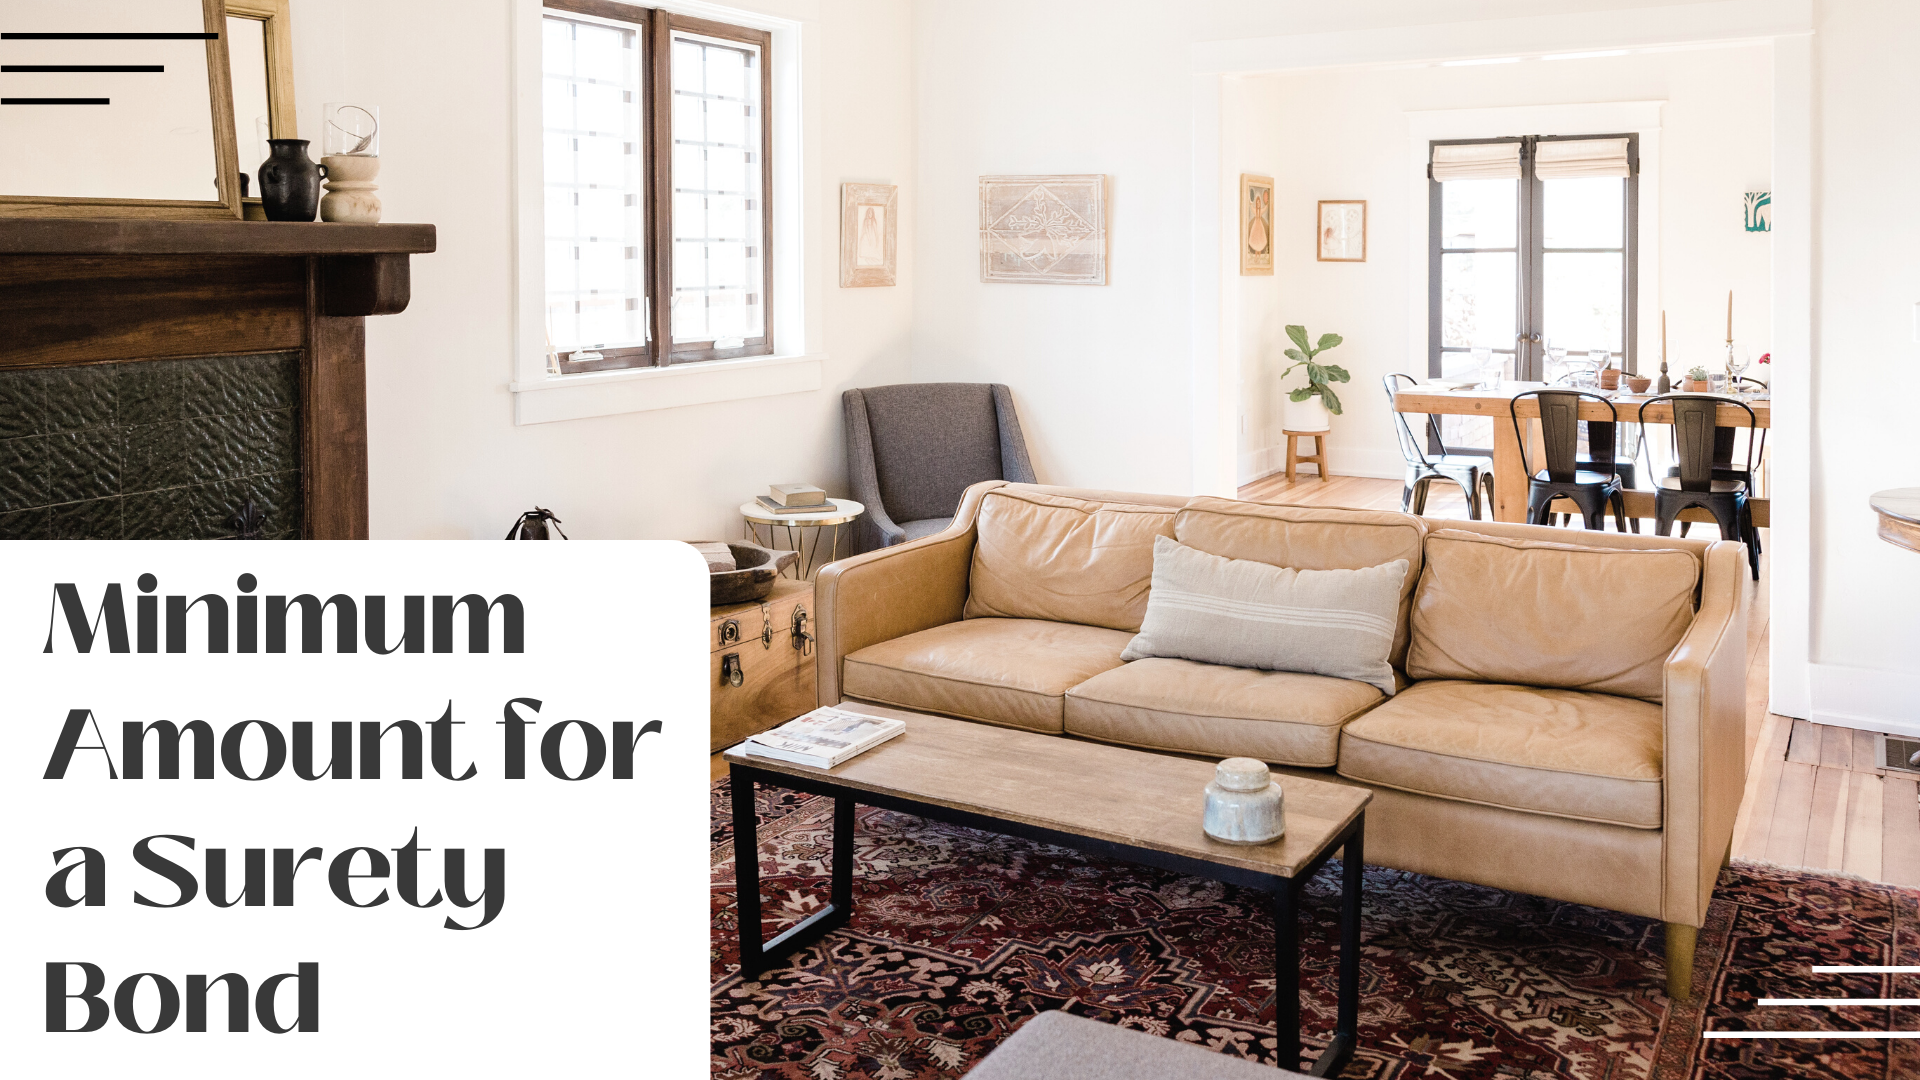 surety bond - What is the minimum amount required to get a surety bond - minimalist home